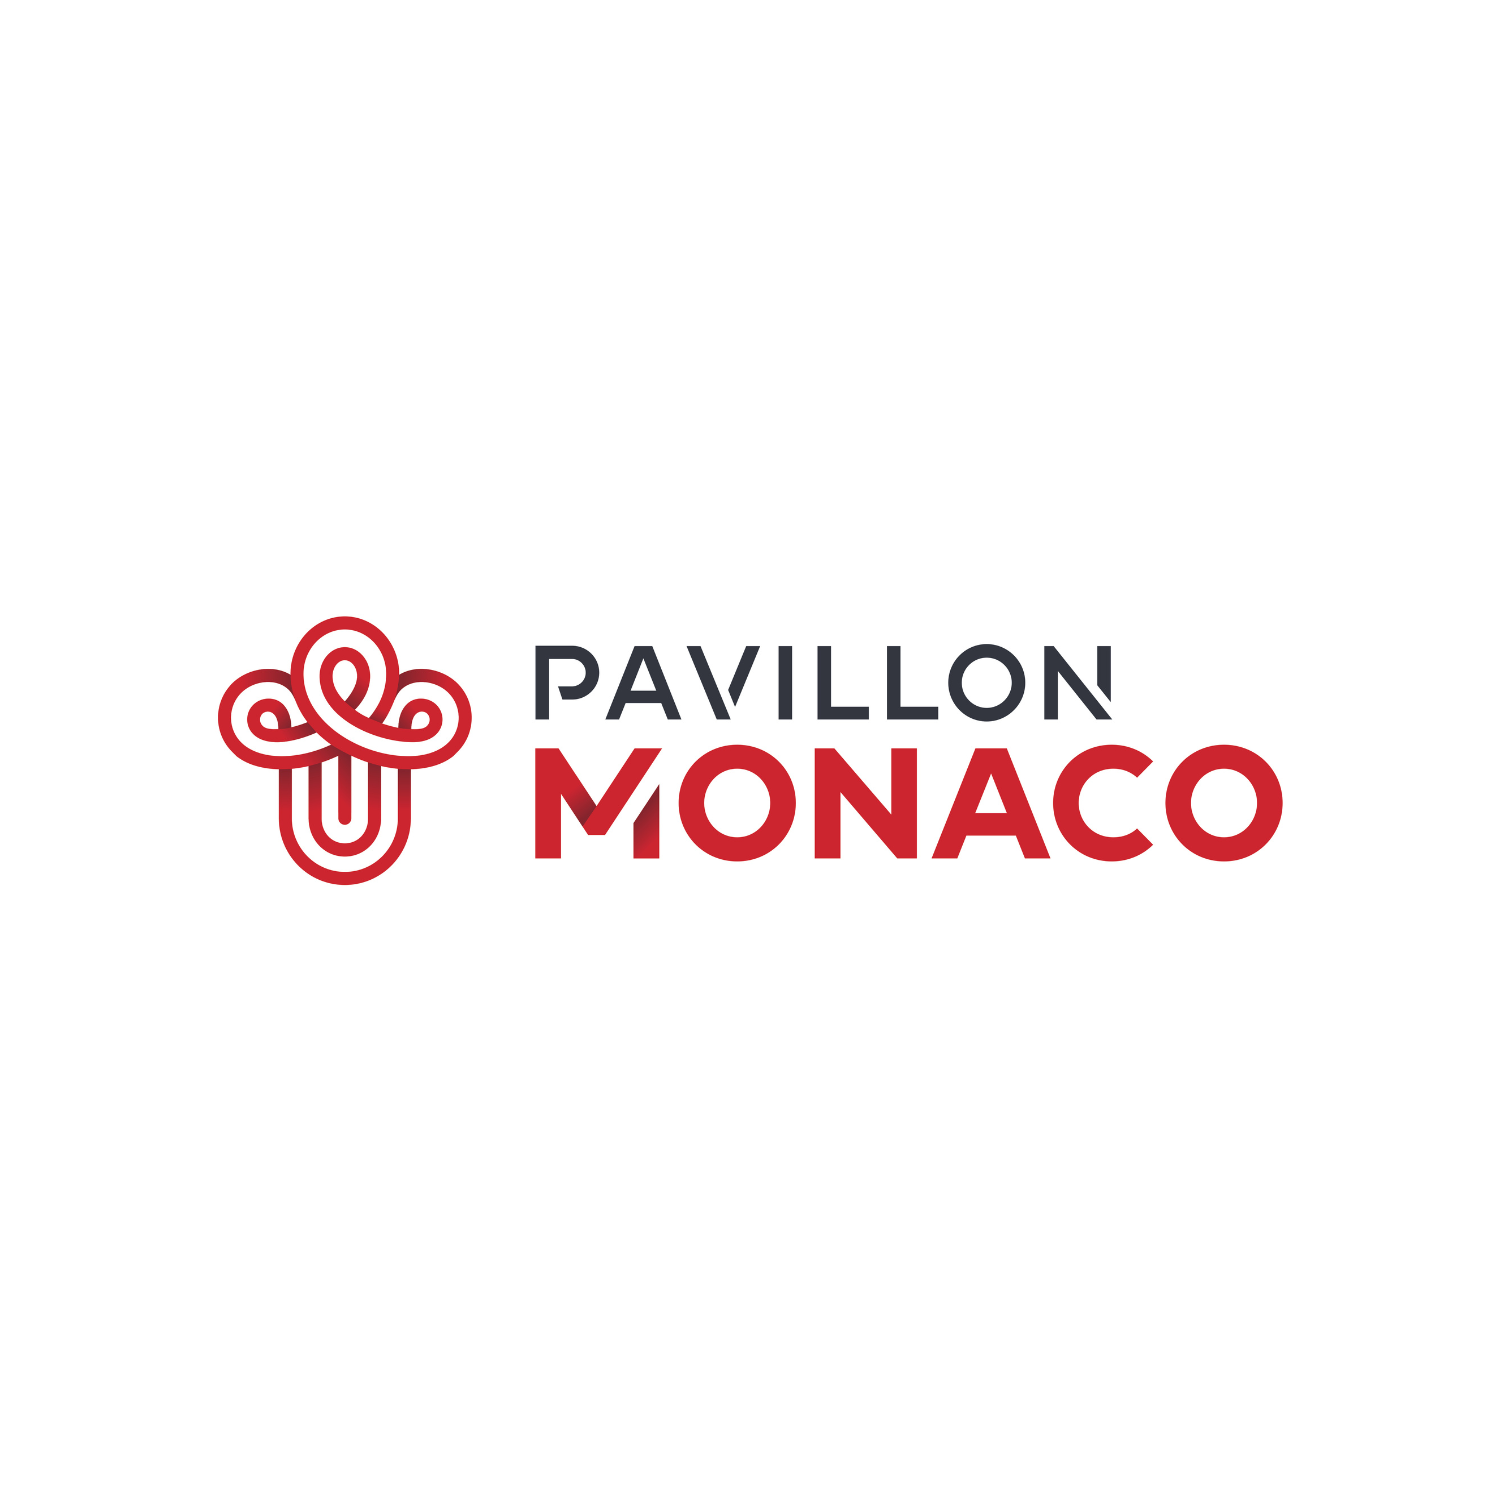 pavilion-monaco-carlo-app-merchant-logo